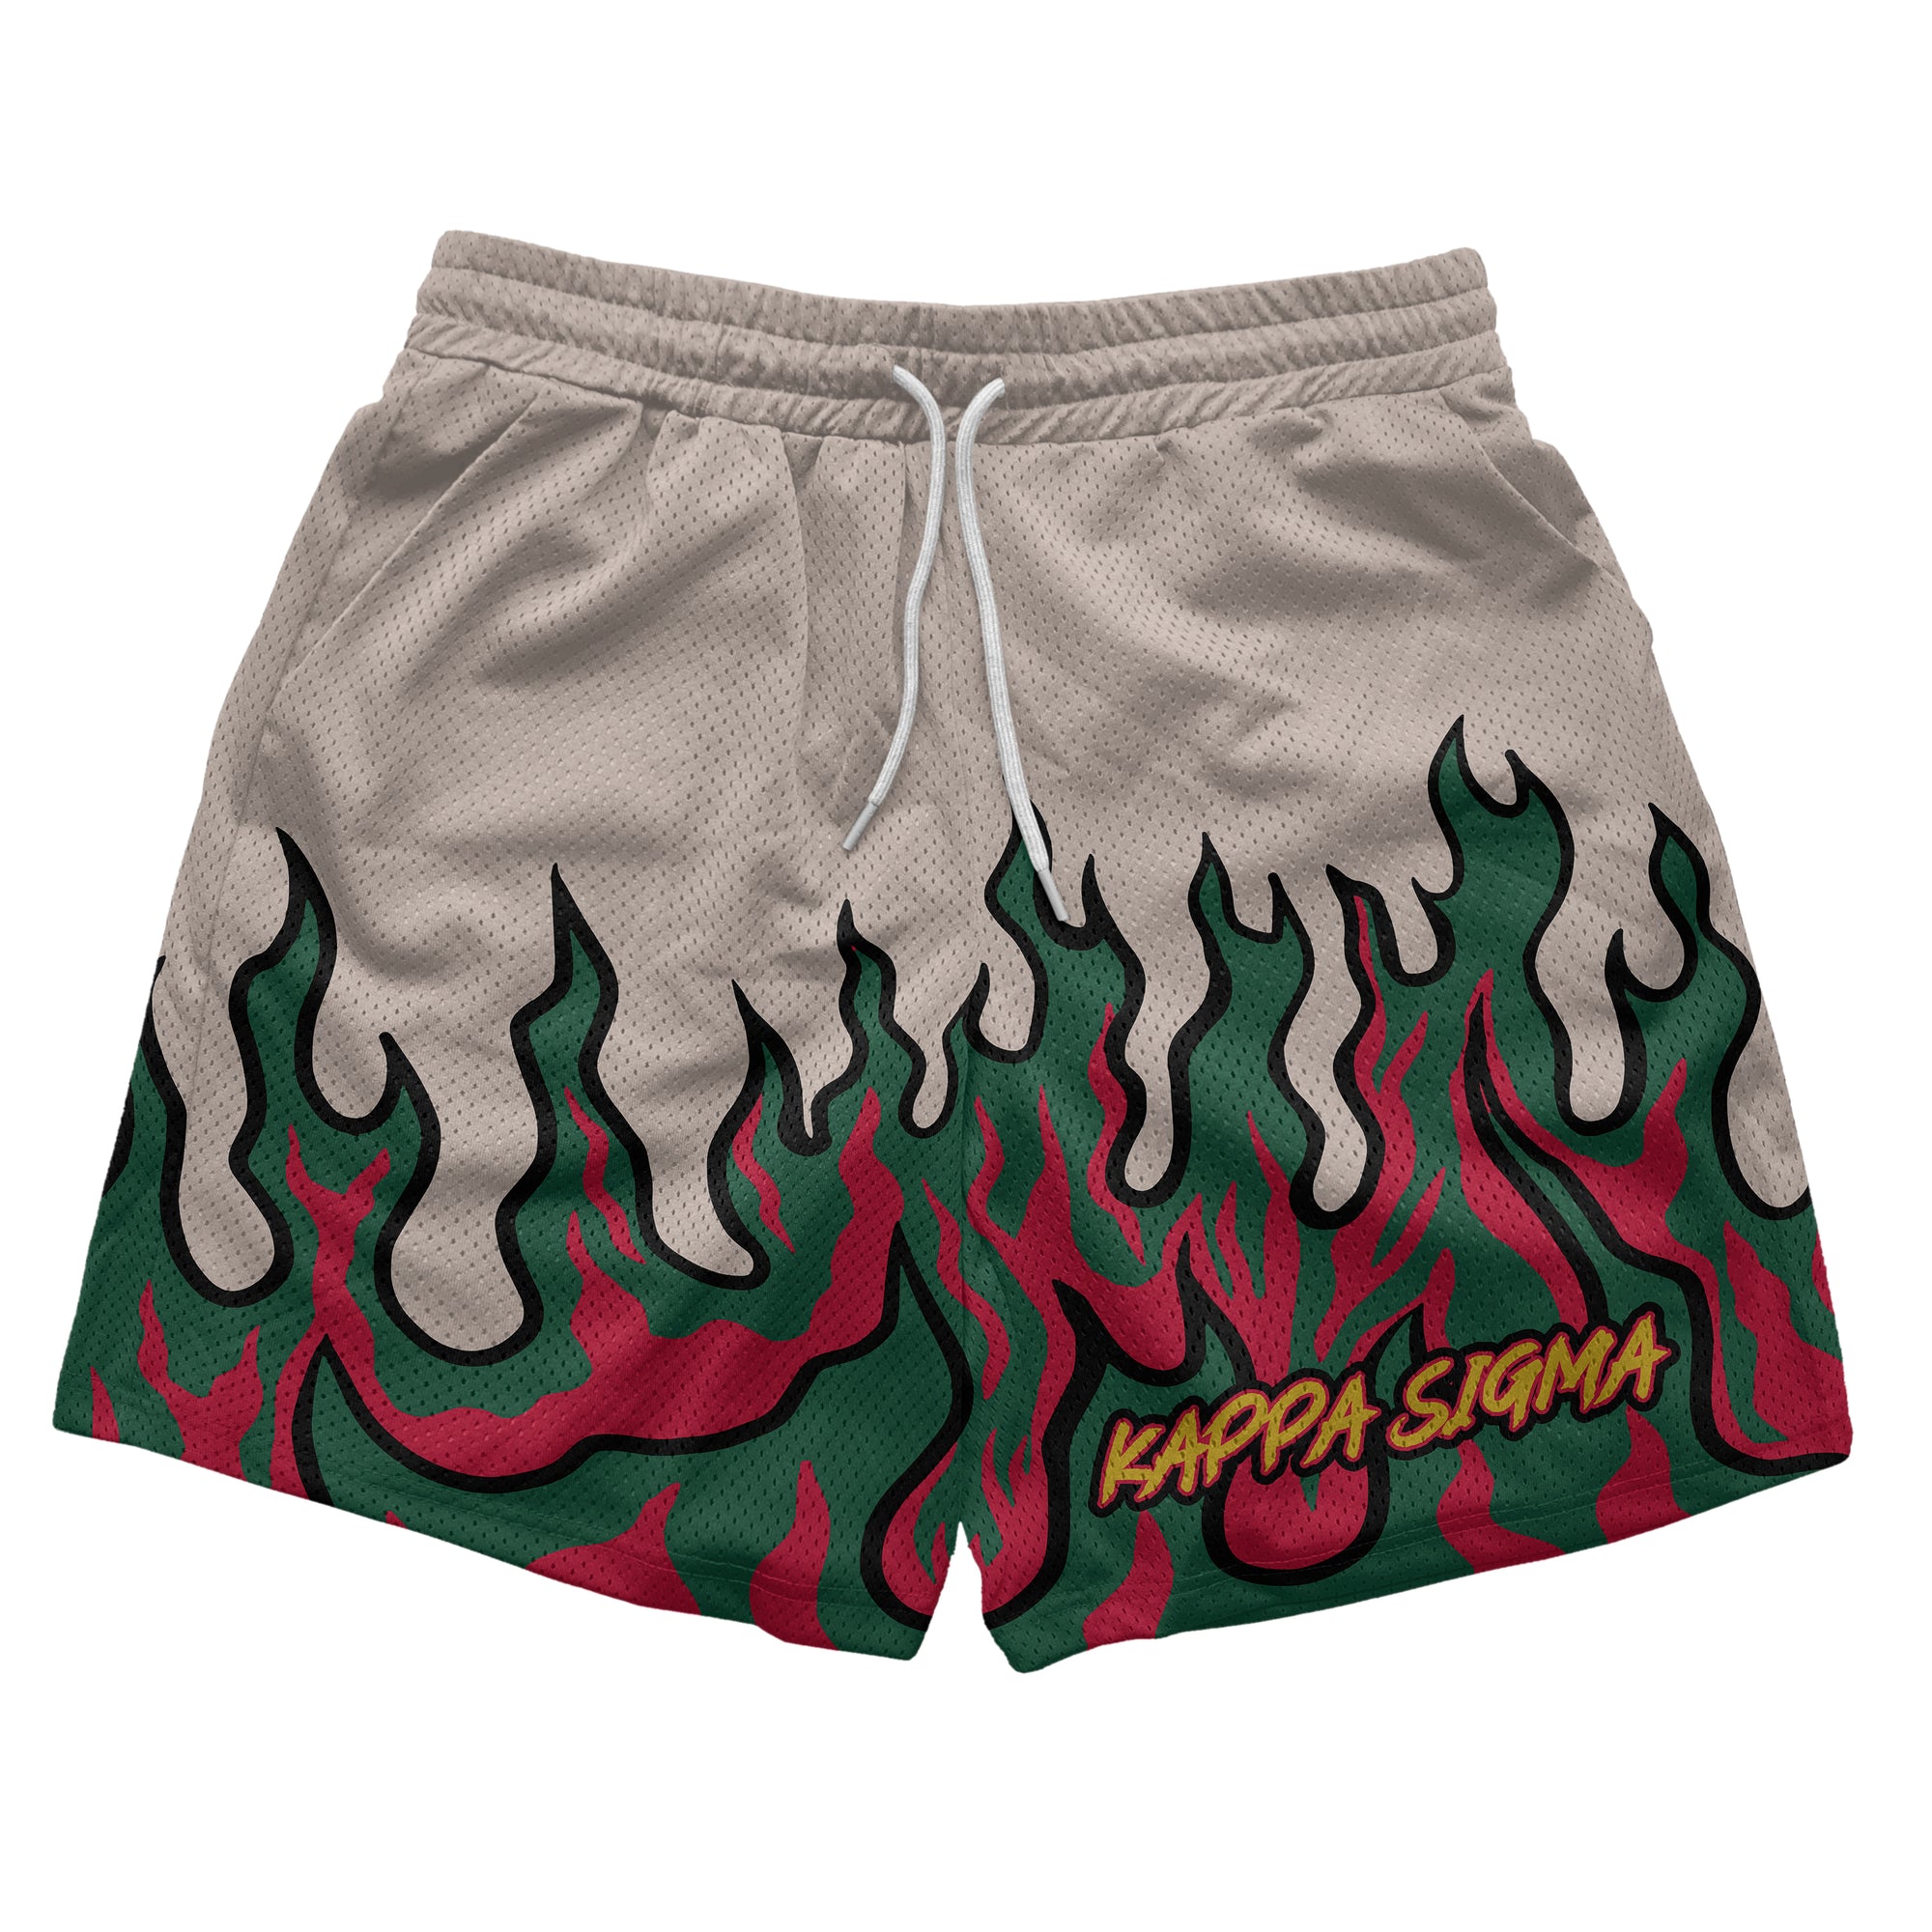 Kappa Sigma - Flames Fundamental Short